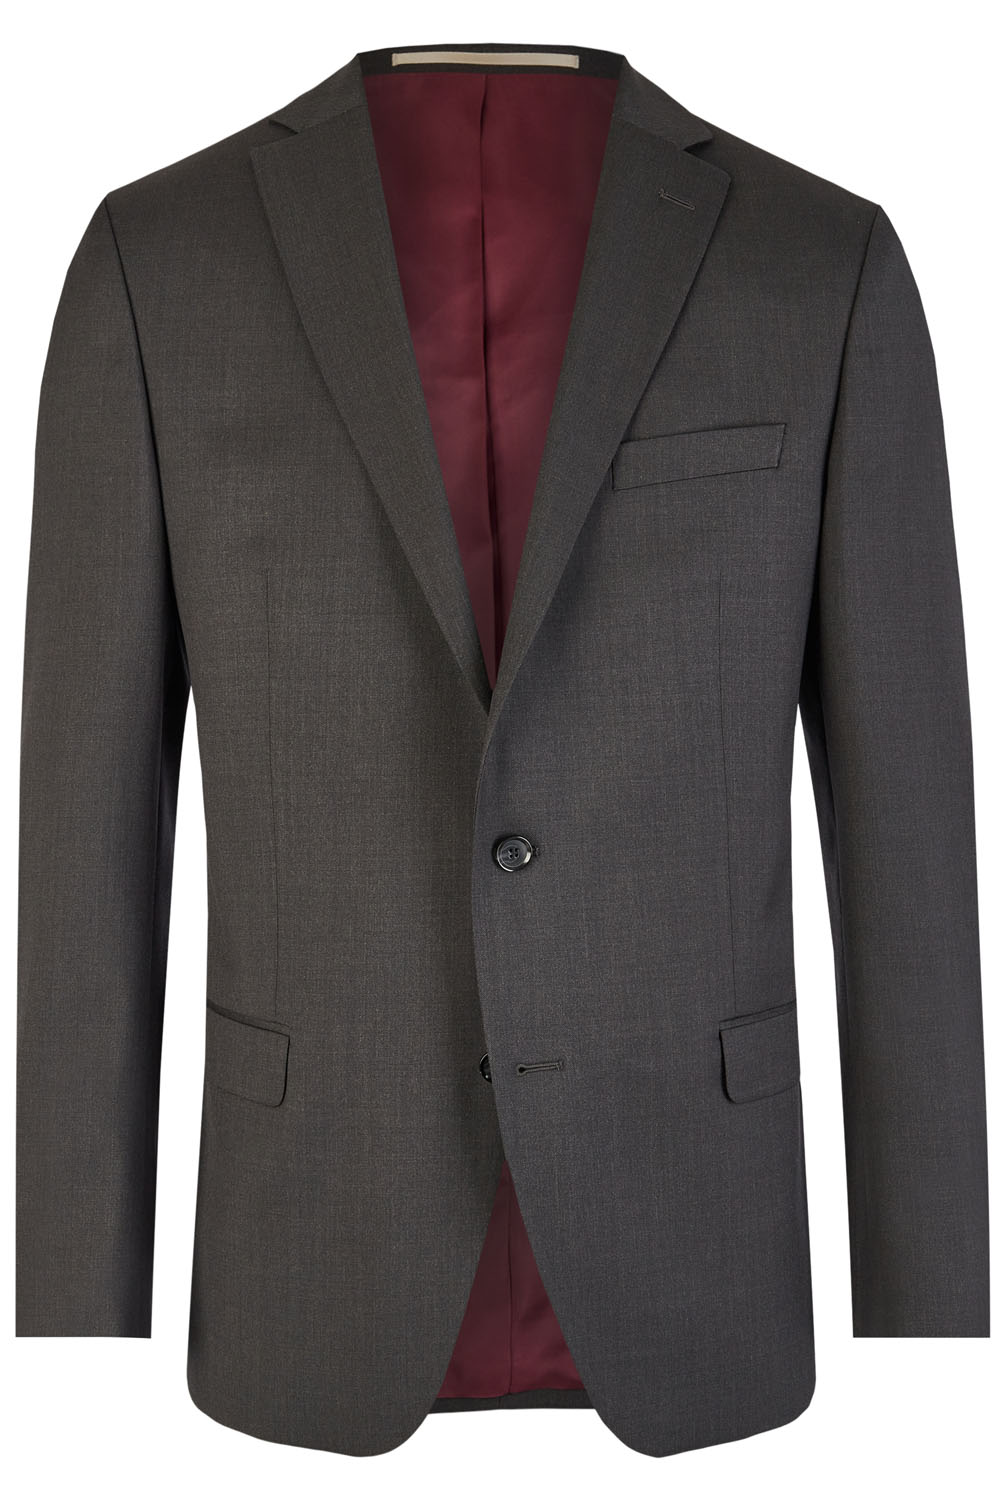 Charcoal Grey 3 piece suit